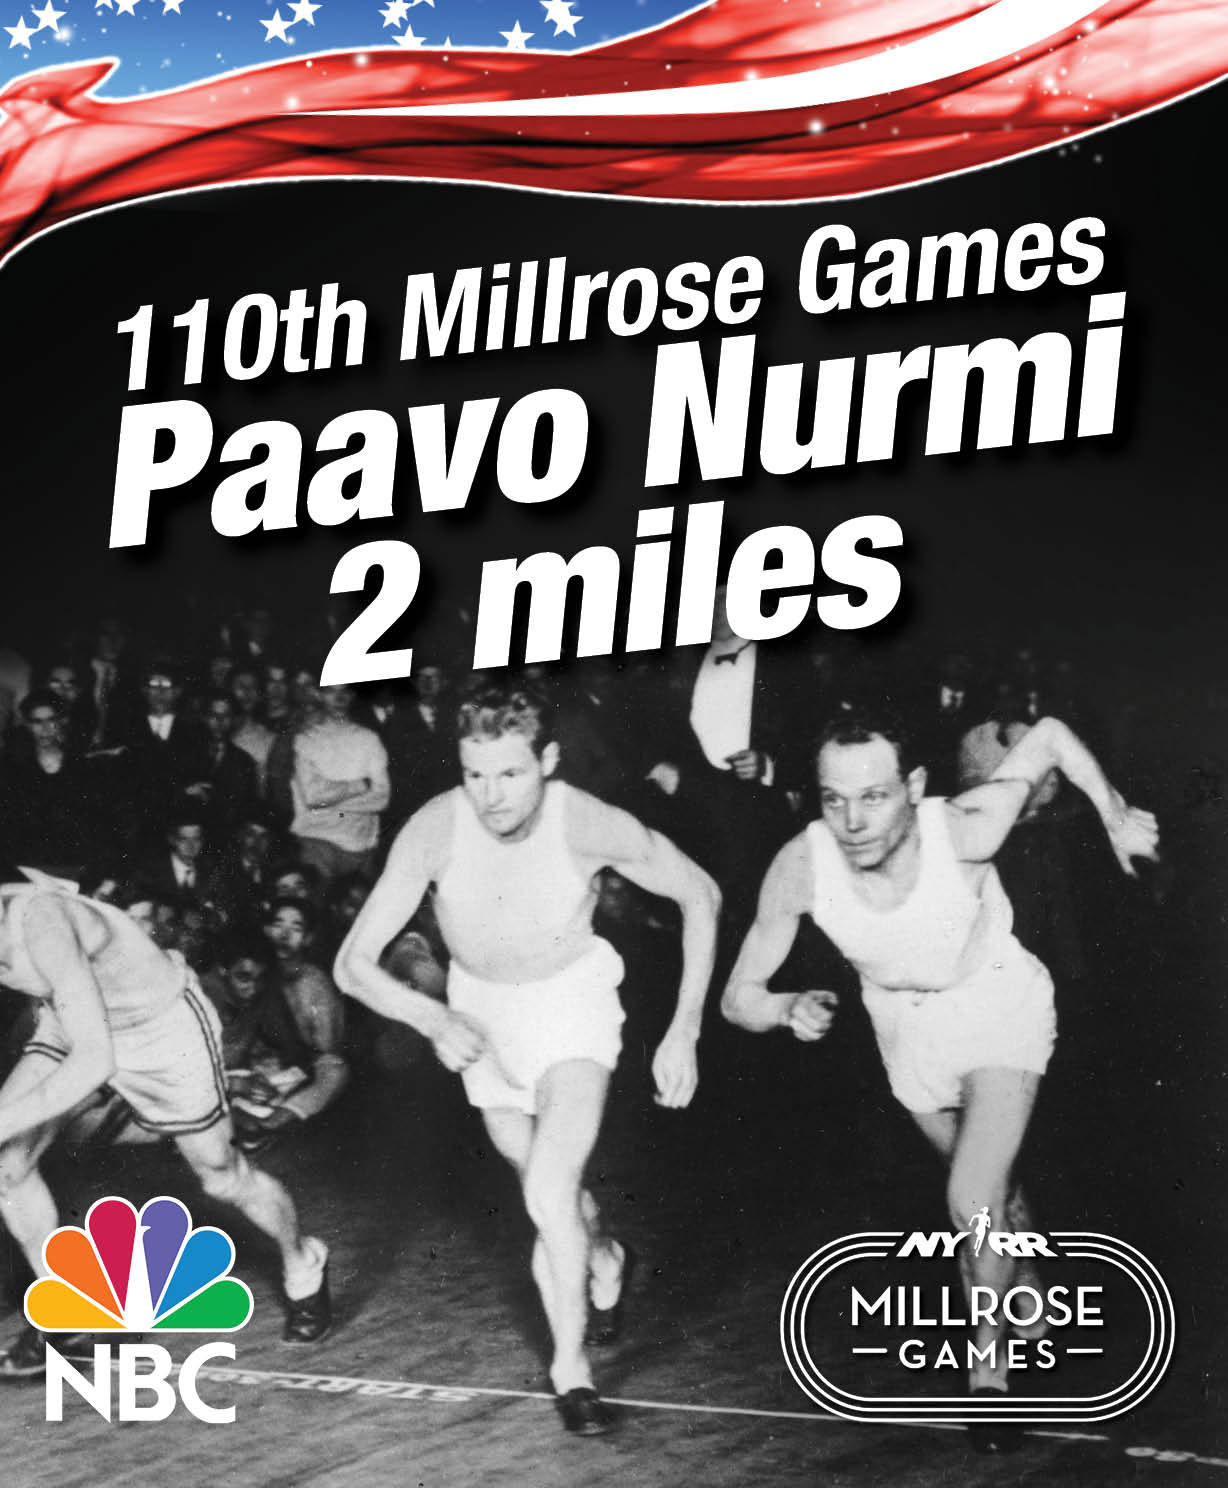 Vuonna 2017 New Yorkin Millrose Games -kilpailussa muistettiin Paavo Nurmea komeasti. Kilpailussa oli suurjuoksijan mukaan nimetty matka Paavo Nurmi Two Miles. 